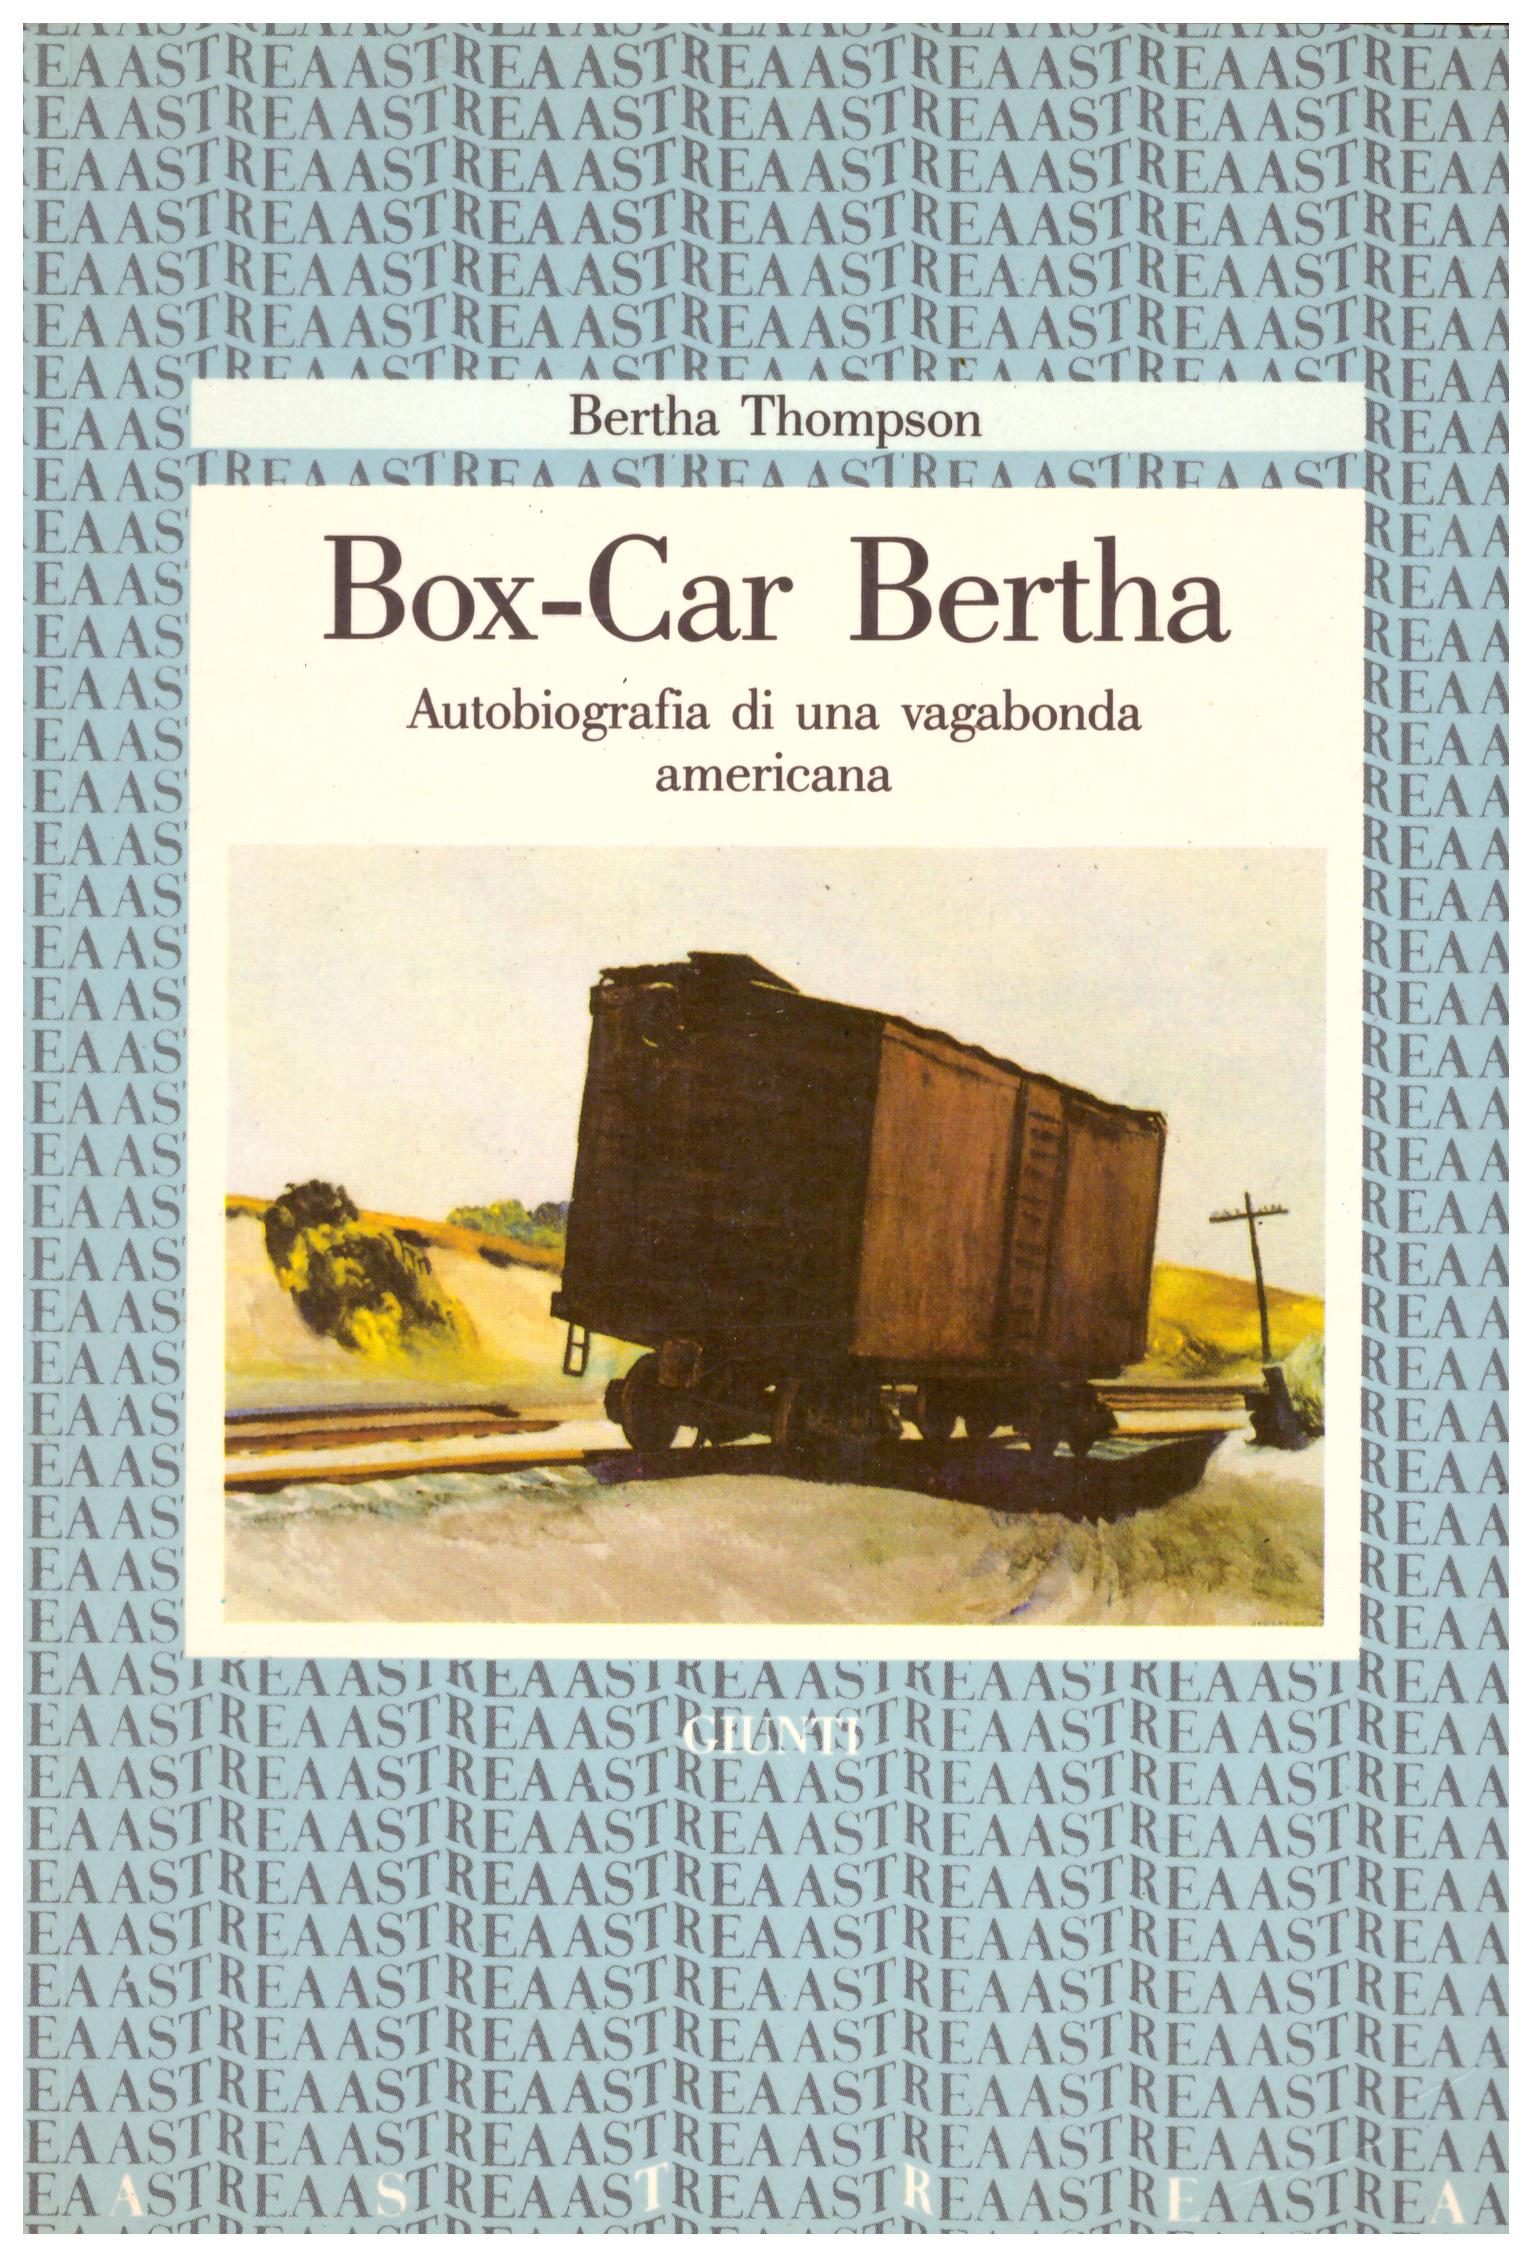 Titolo: Box Car Berta Autore: Bertha Thompson Editore: Giunti, 1986